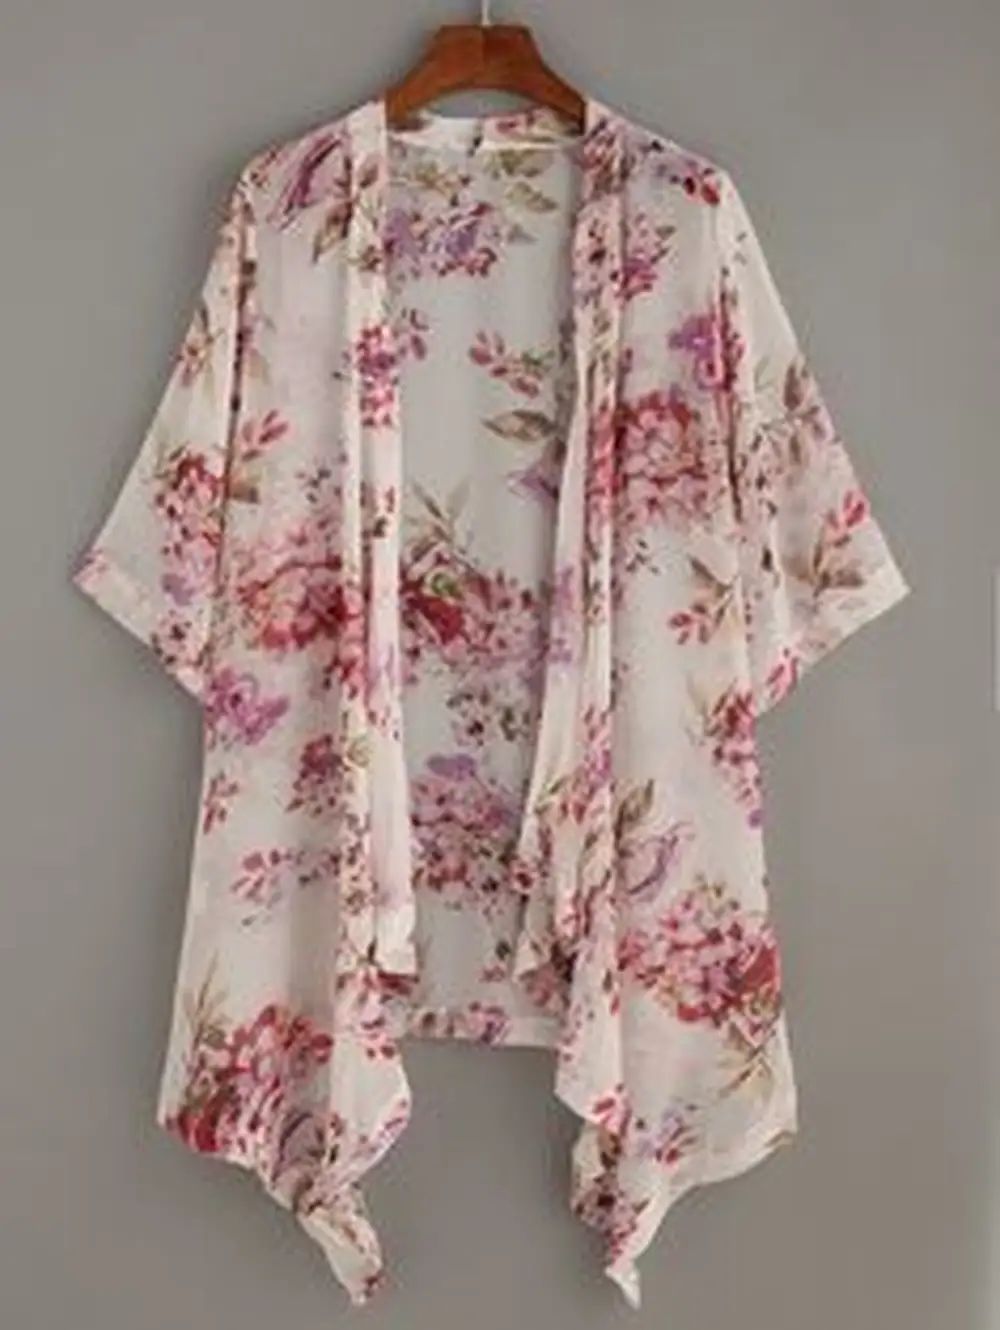 A kimono